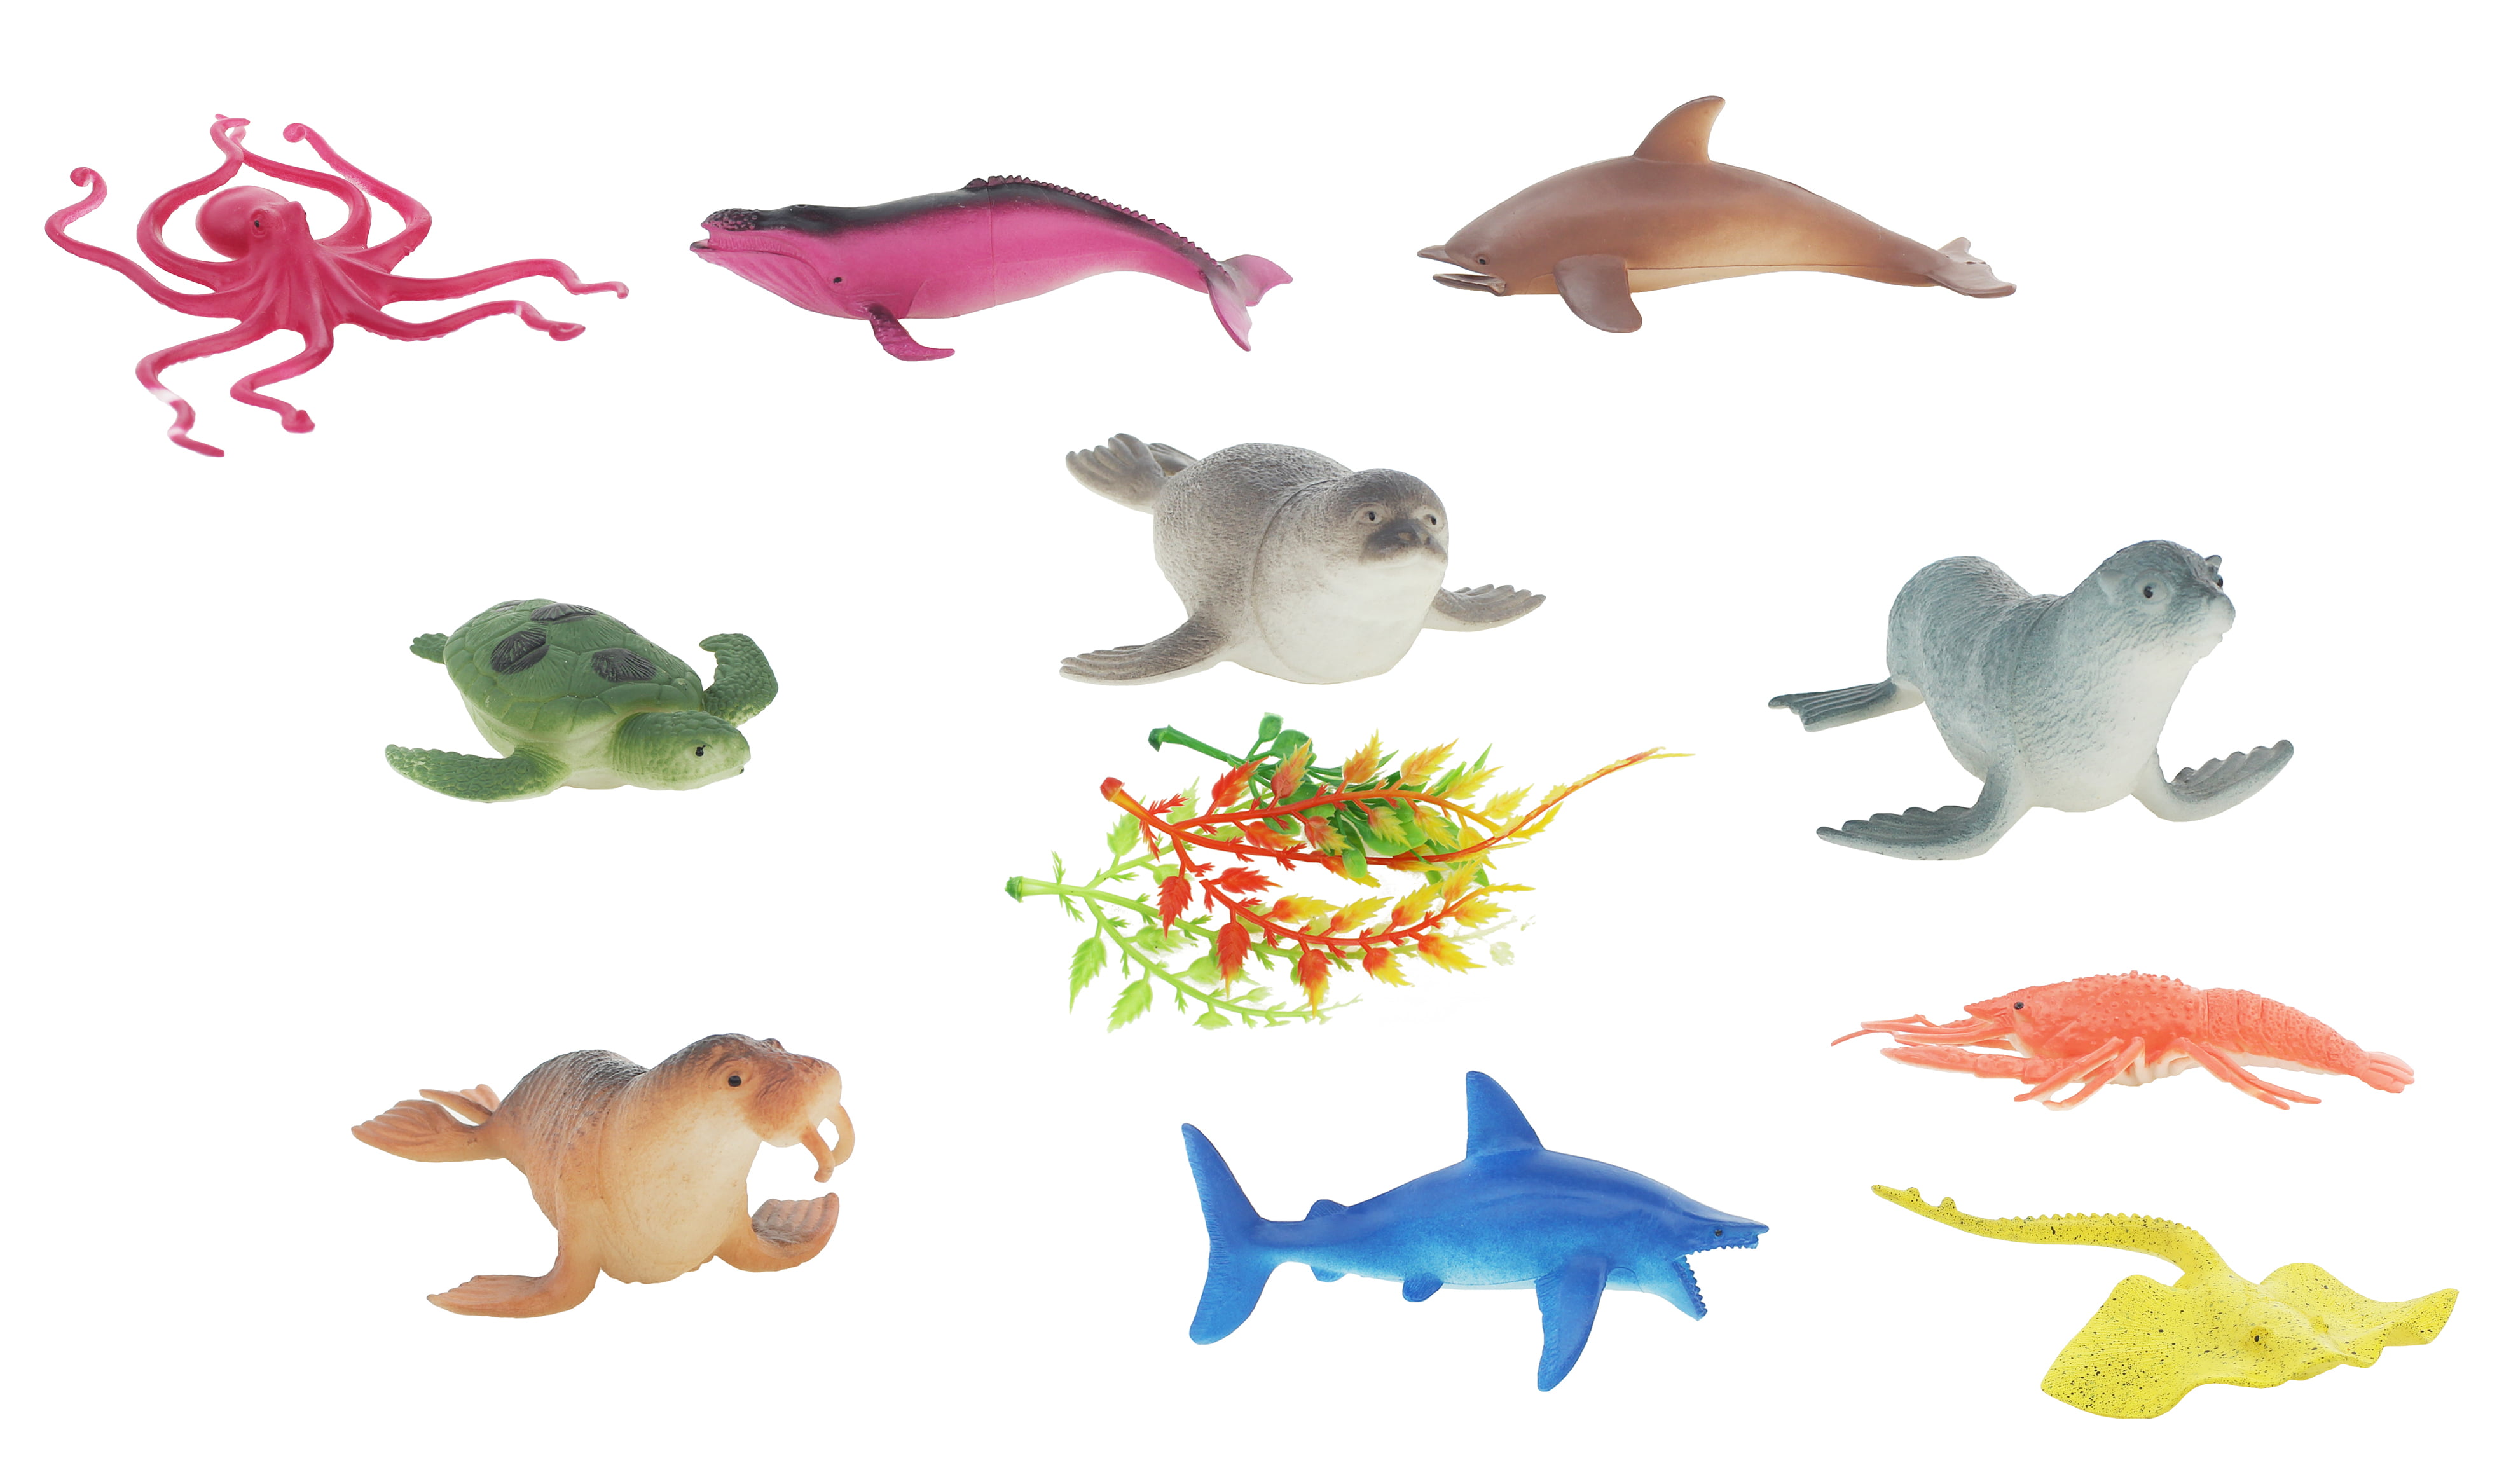 Ocean, Aquatic, Marine Toy Animal Playset, Sea Life Creatures for Children  